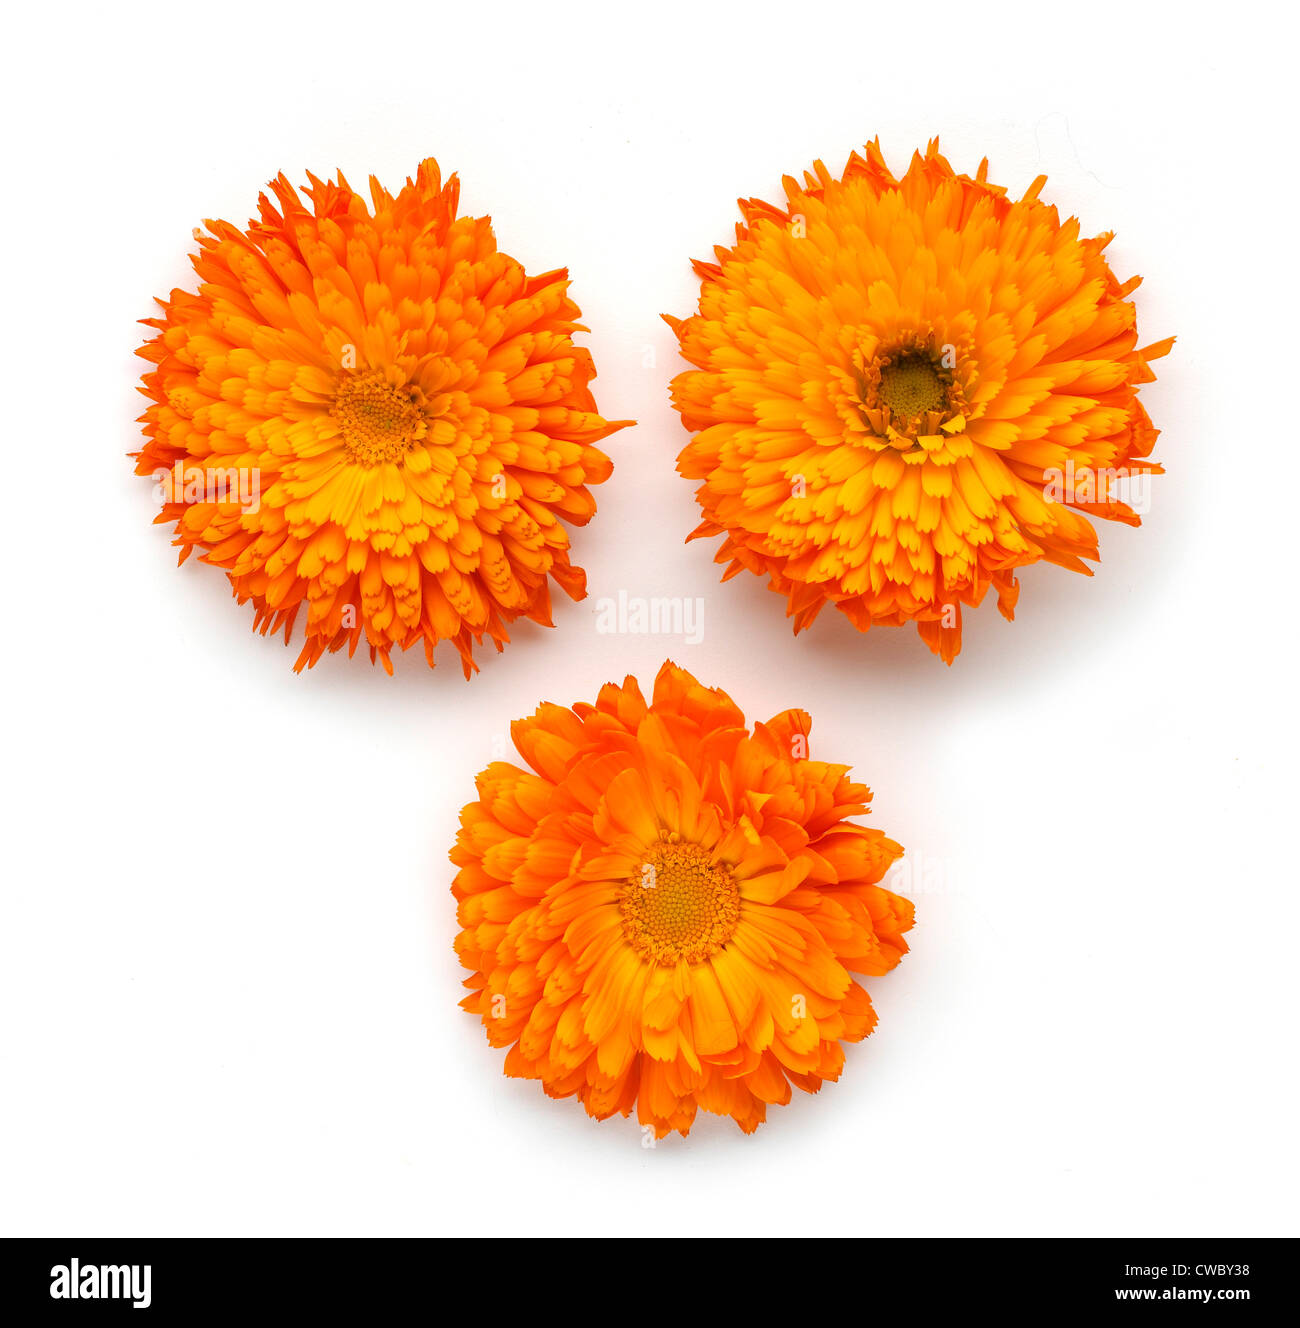 Overview of Three Orange flowers Stock Photo